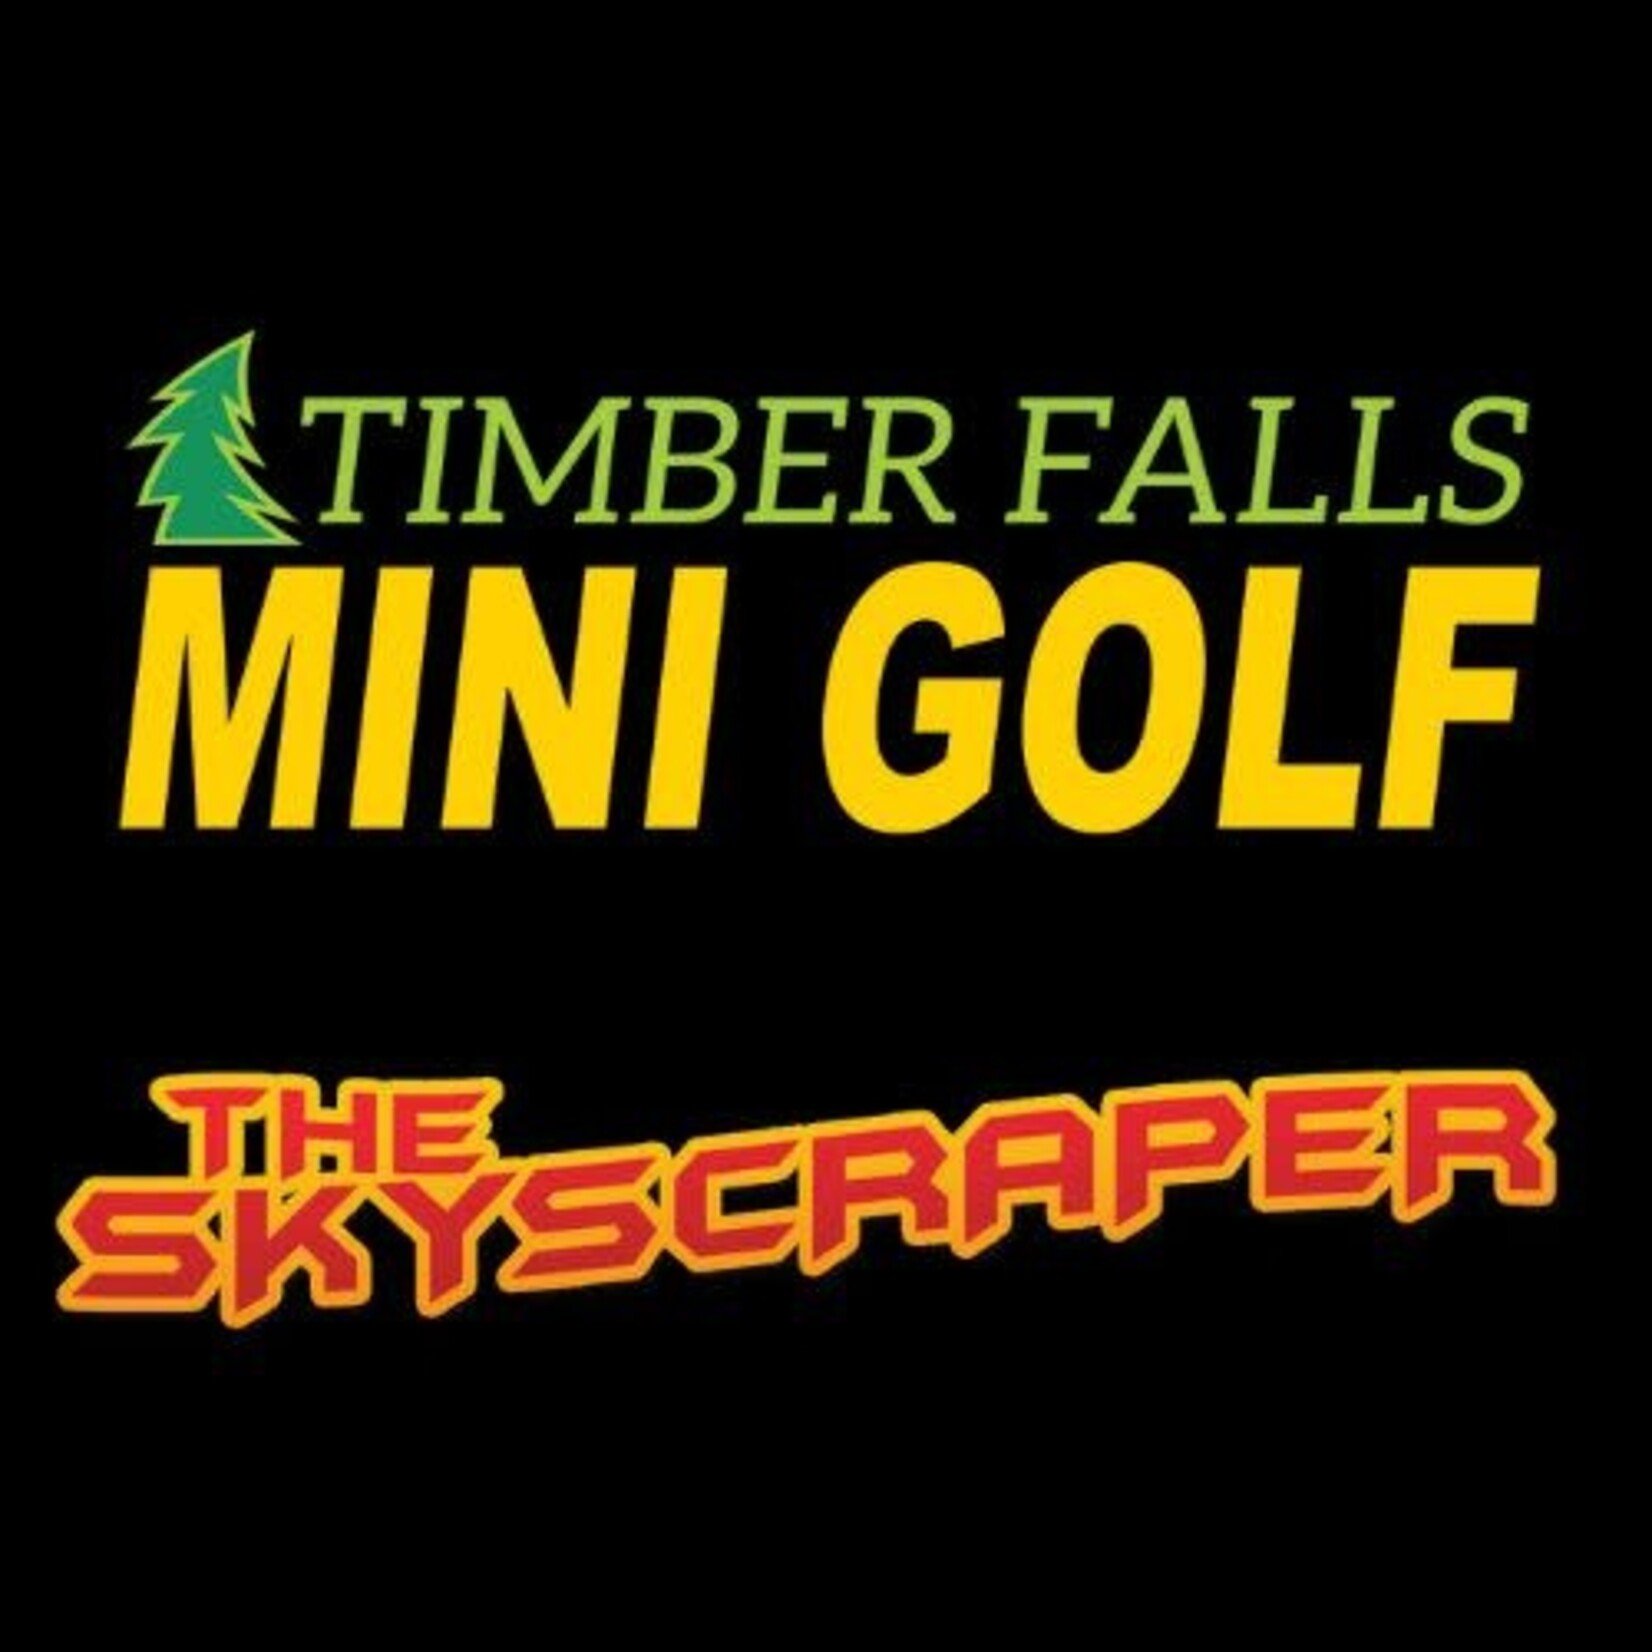 Timber Falls Adventure Park-Wisconsin Dells Timber Falls Adventure Park-Wisconsin Dells $9.00 Round of Mini Golf